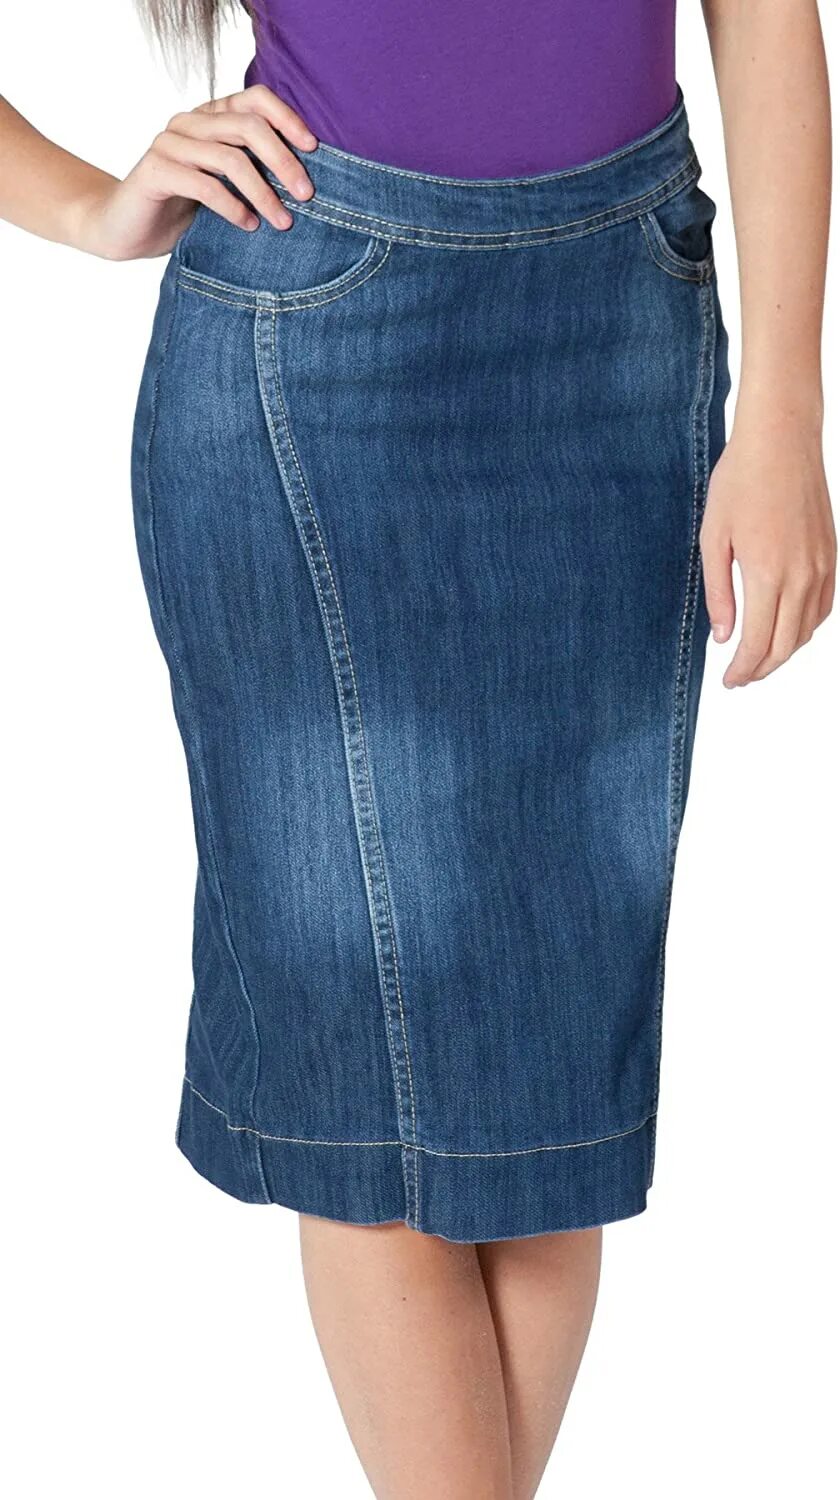 Джинсовая юбка прямая. Юбка джинсовая. Юбка джинсовая женская. Джинсовые юбки прямые. Прямая джинсовая юбка.